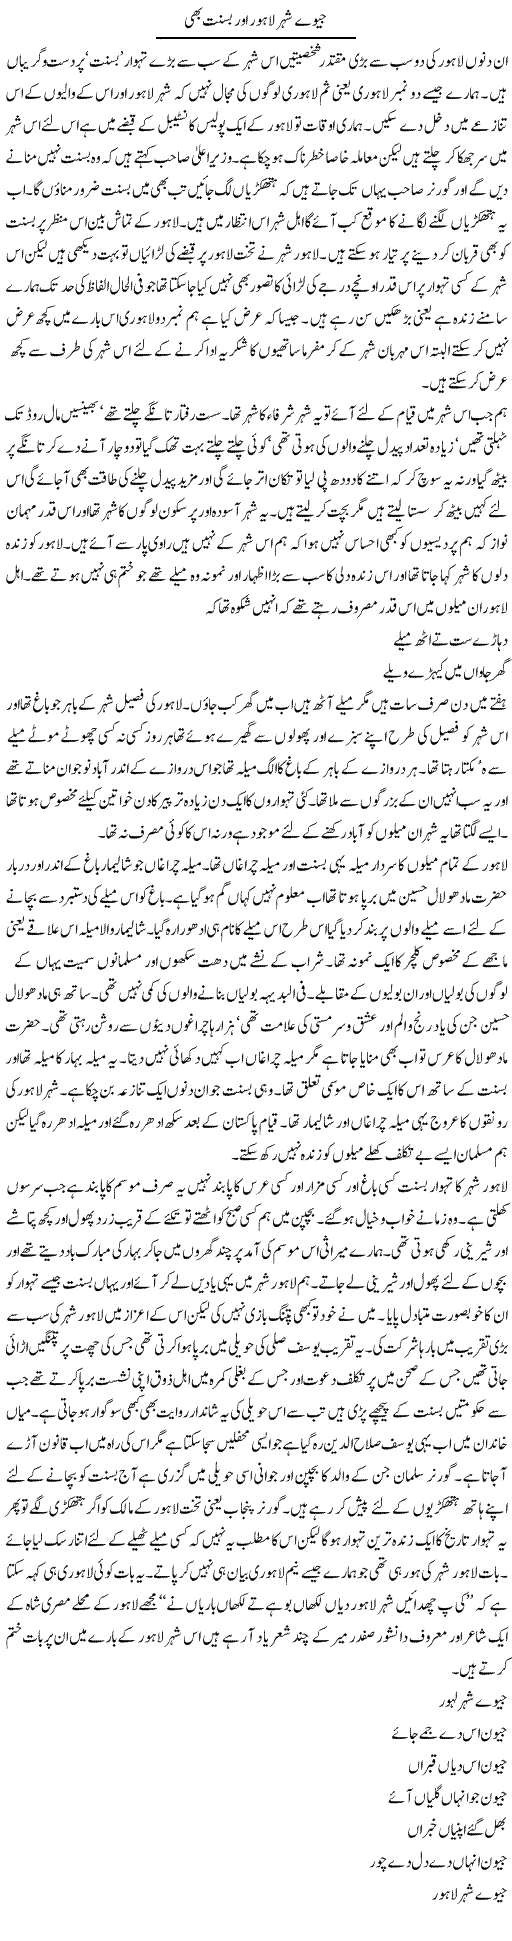 Geo Lahore aur Basant Express Column Abdul Qadir Hasan 23 Feb 2010